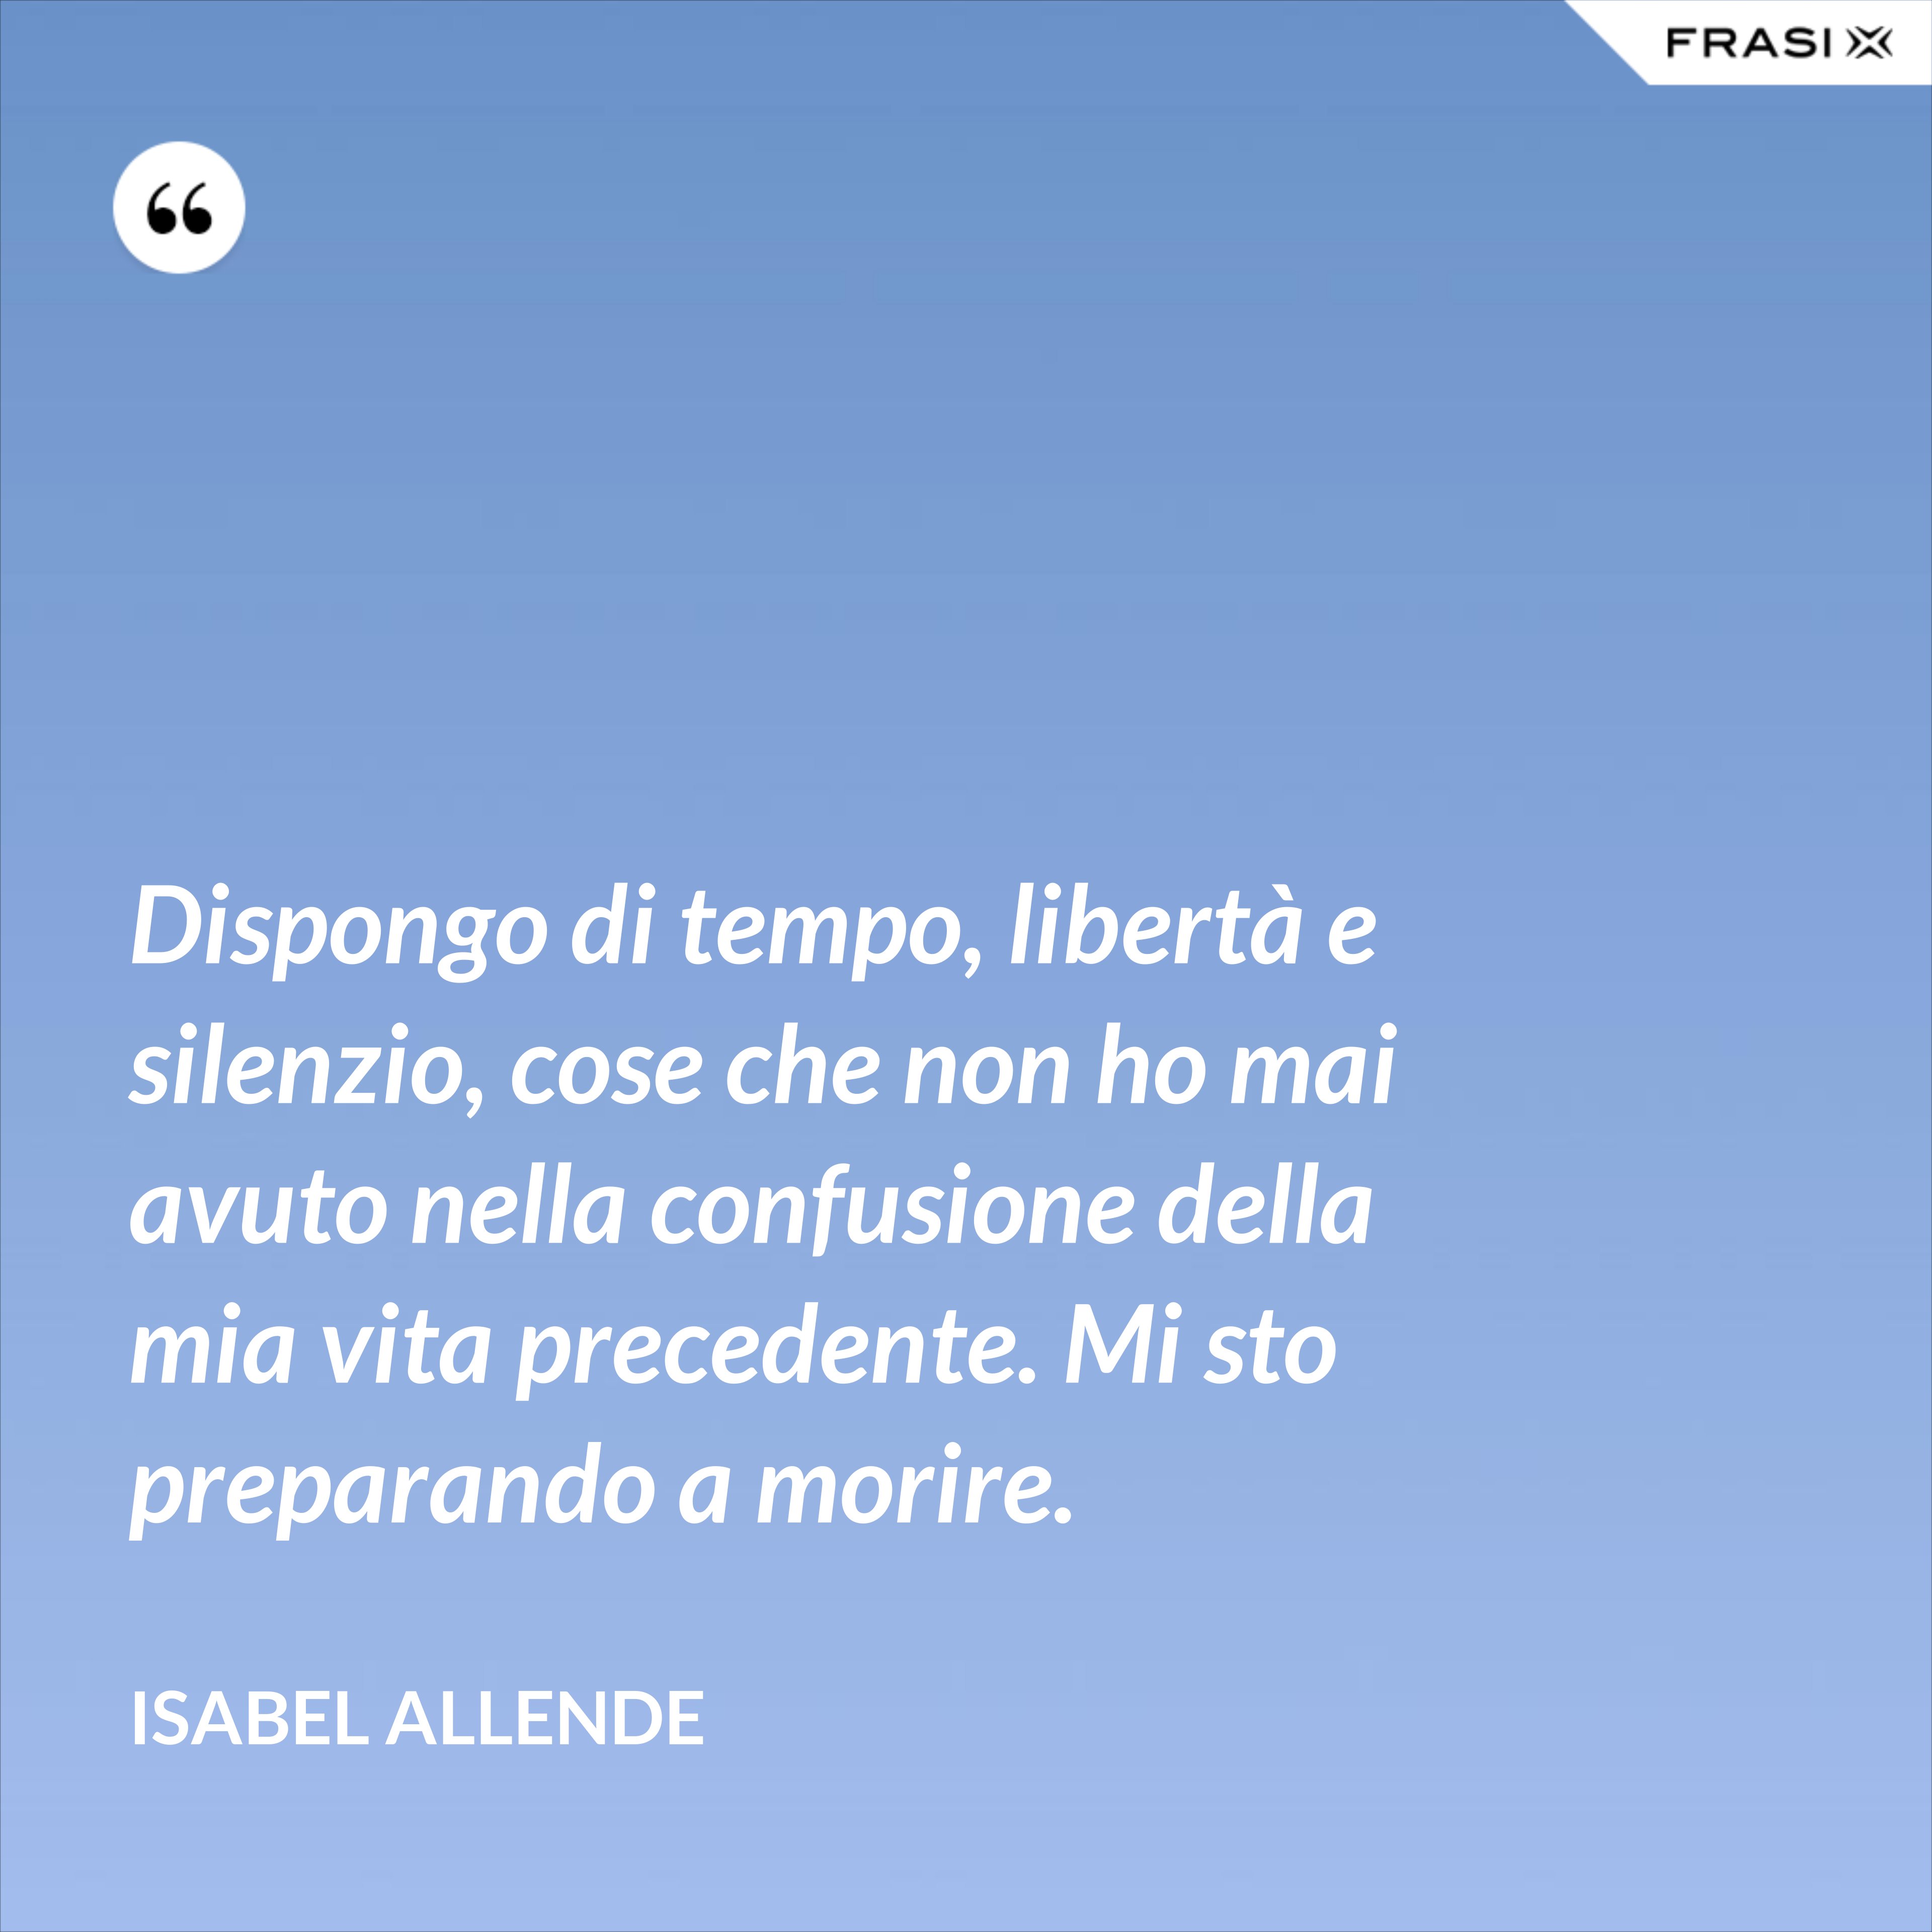 Dispongo di tempo, libertà e silenzio, cose che non ho mai avuto nella confusione della mia vita precedente. Mi sto preparando a morire. - Isabel Allende